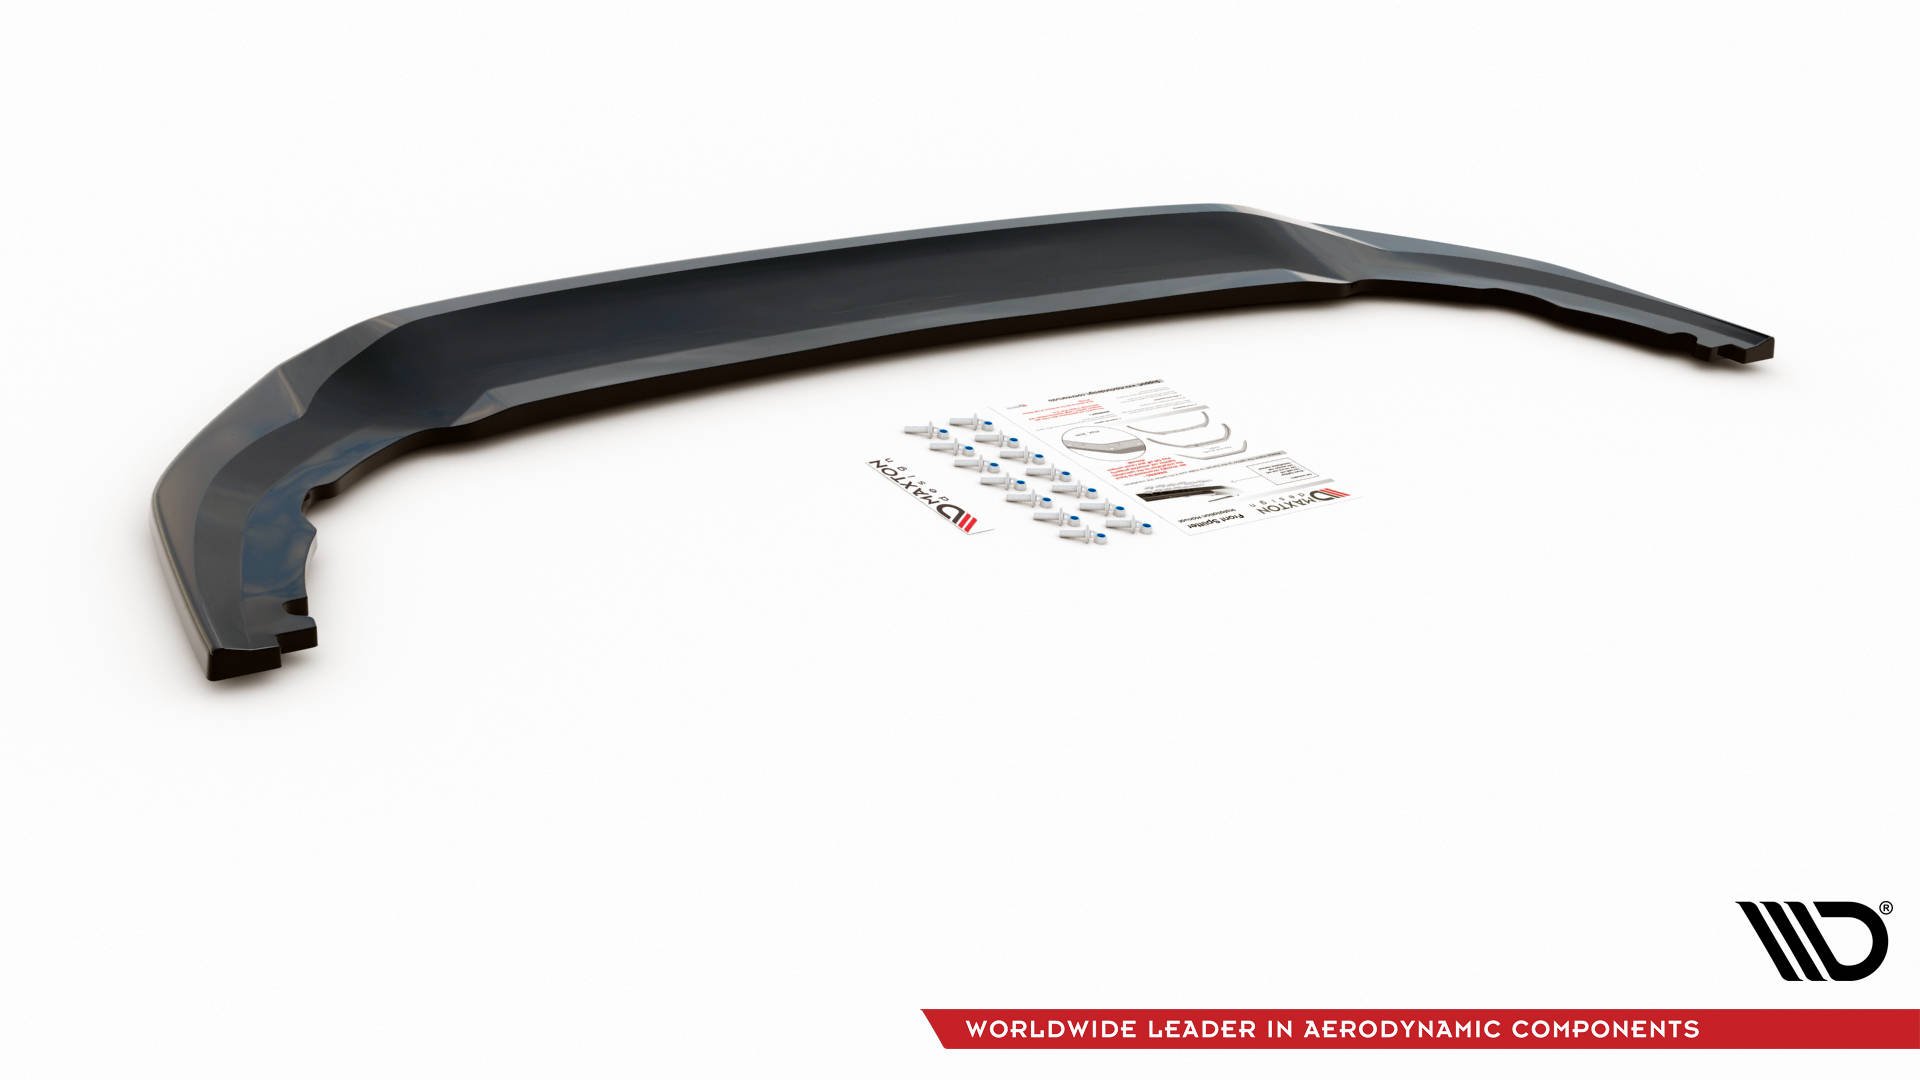 Maxton Design Front Ansatz V.3 für Volkswagen Golf 8 GTI Clubsport schwarz Hochglanz